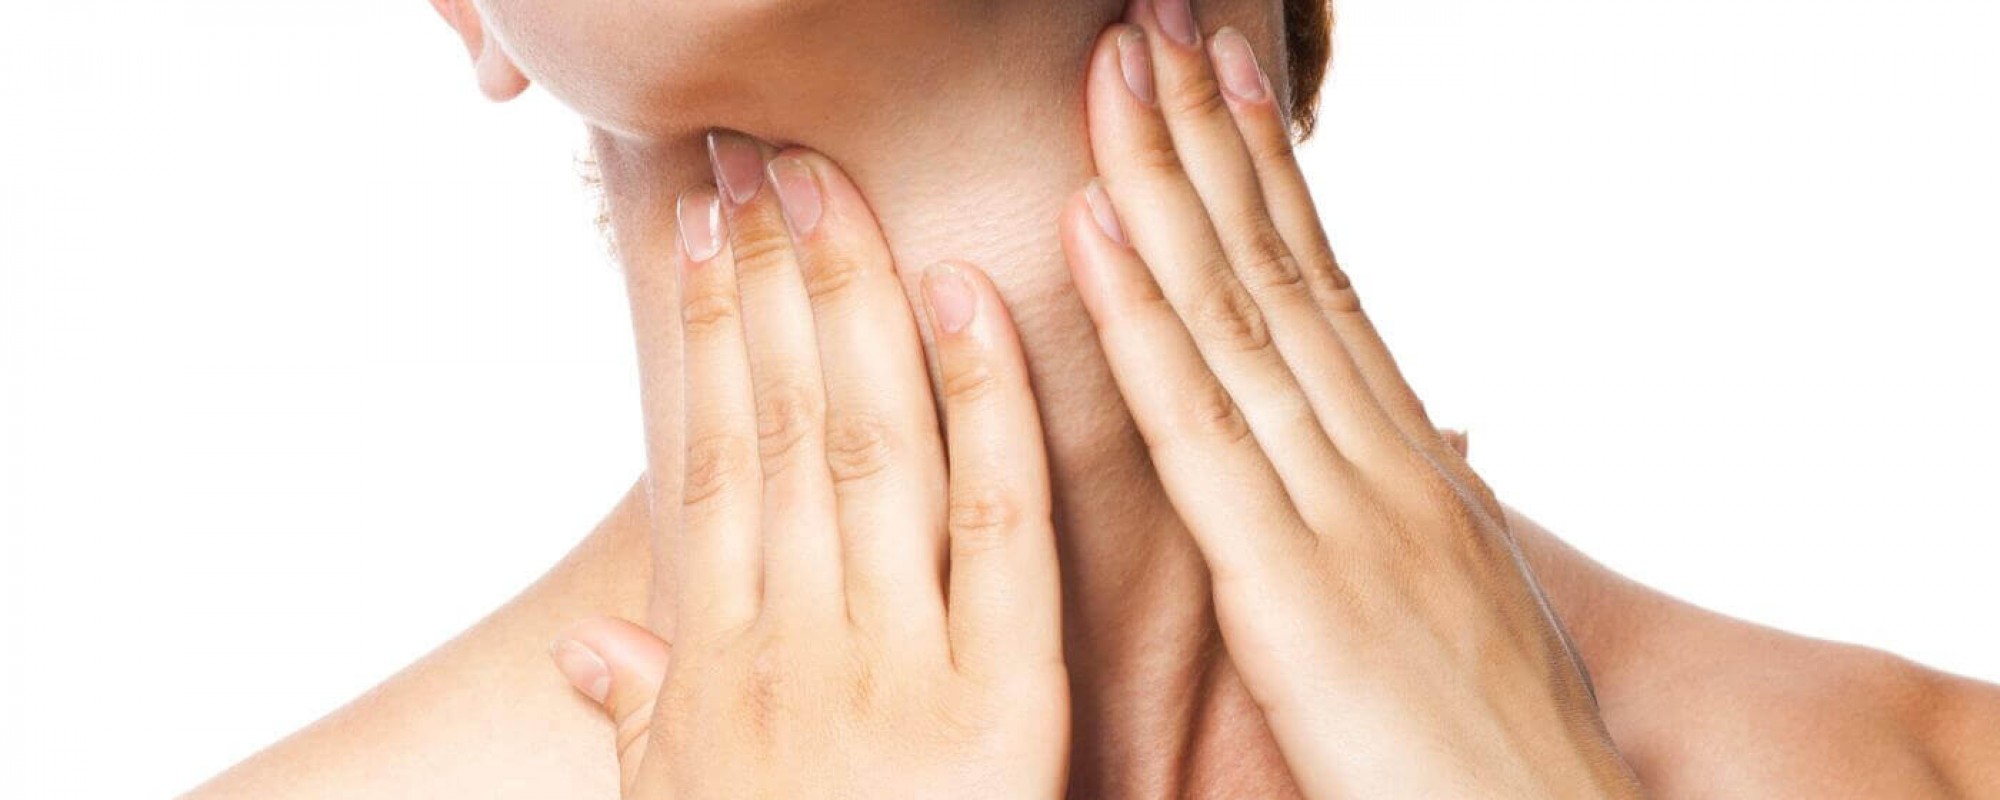 A glândula fica localizada no pescoço e é responsável por produzir alguns hormônios e controlar o funcionamento do metabolismo. 